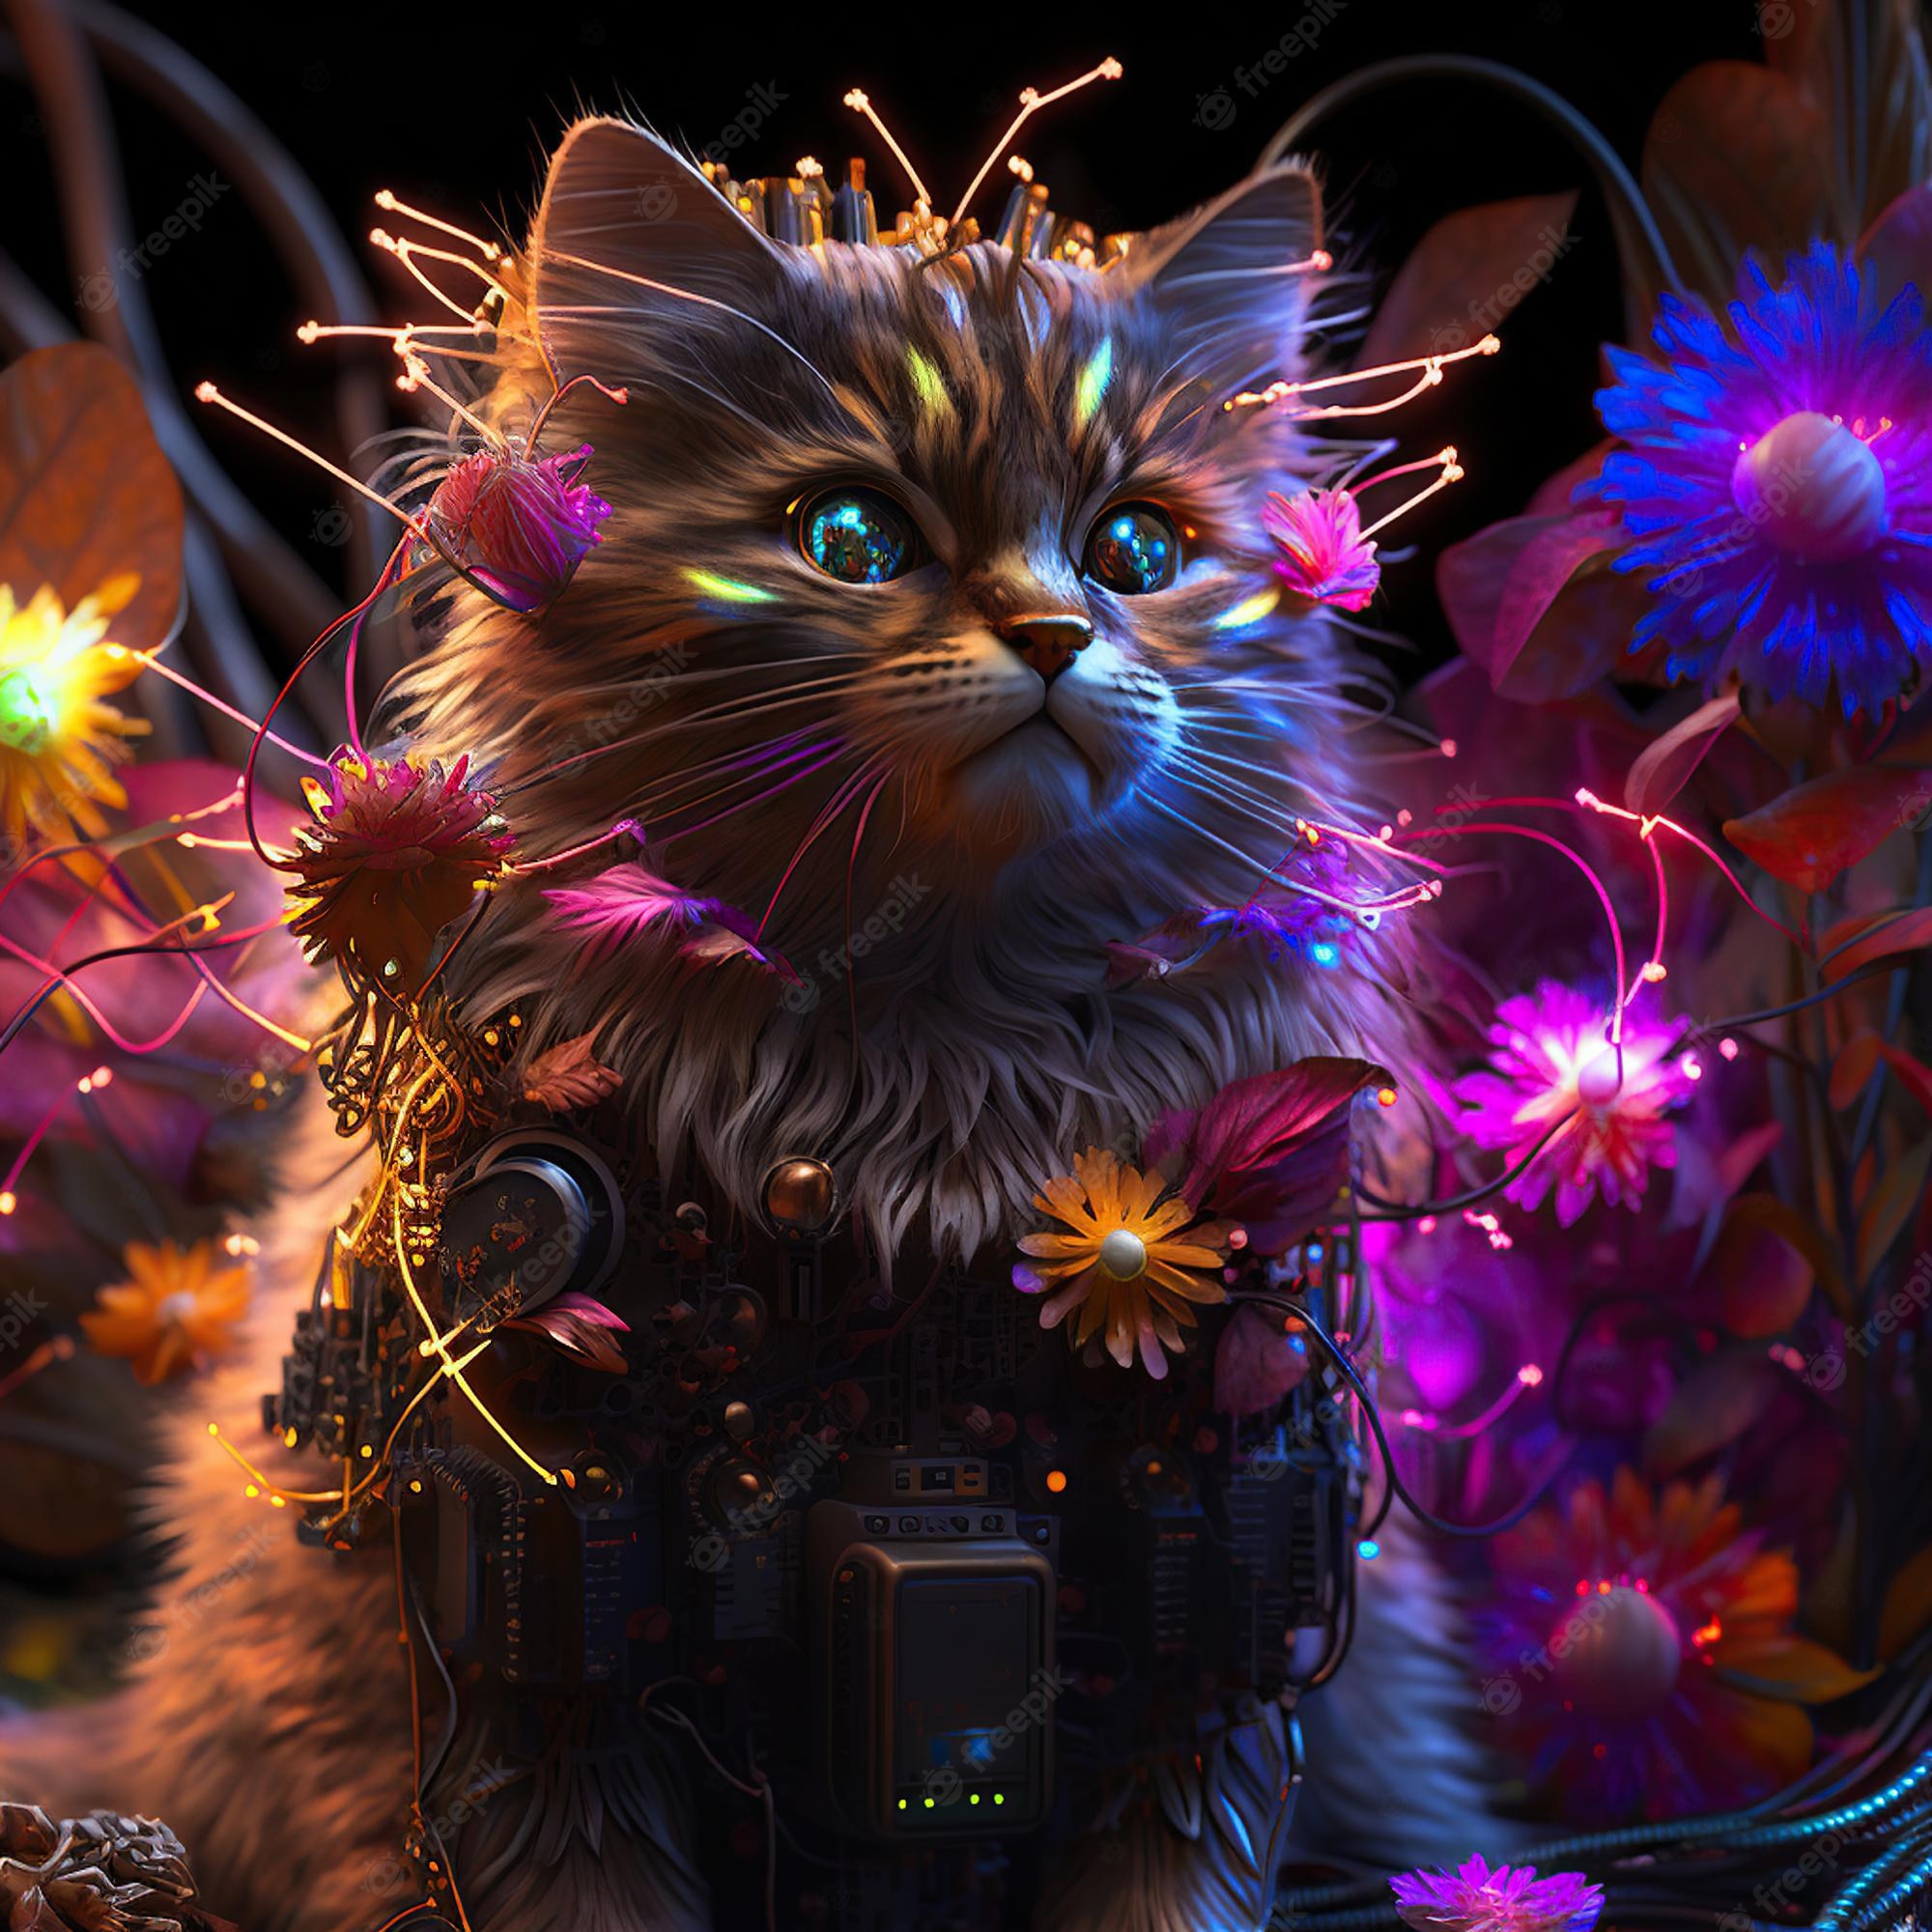 Fantasy Cat Image